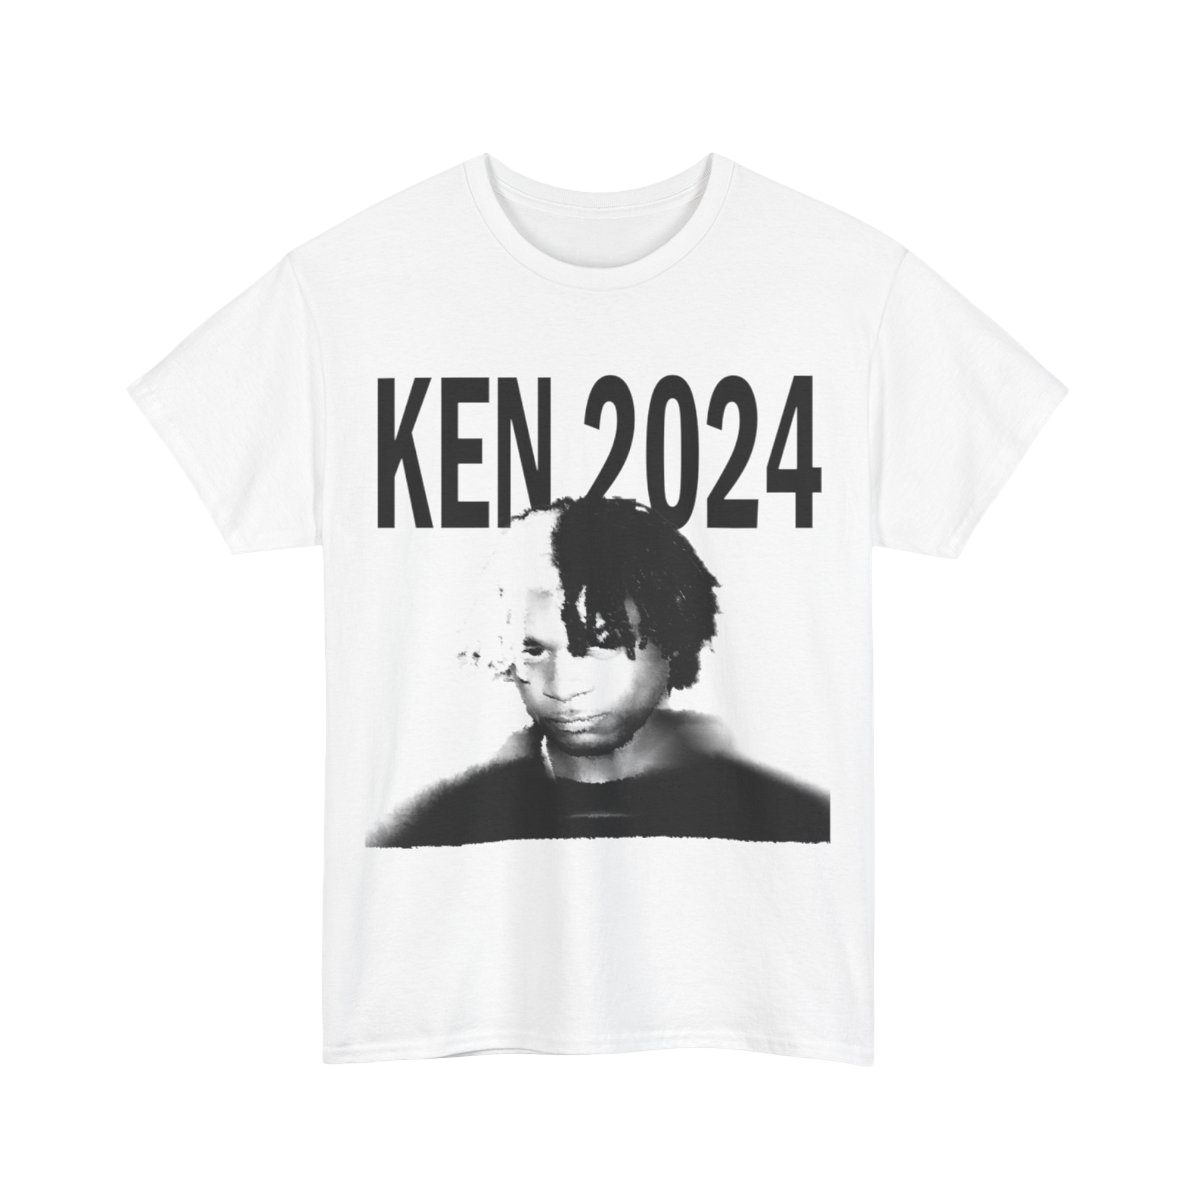 Ken 2024 Tee